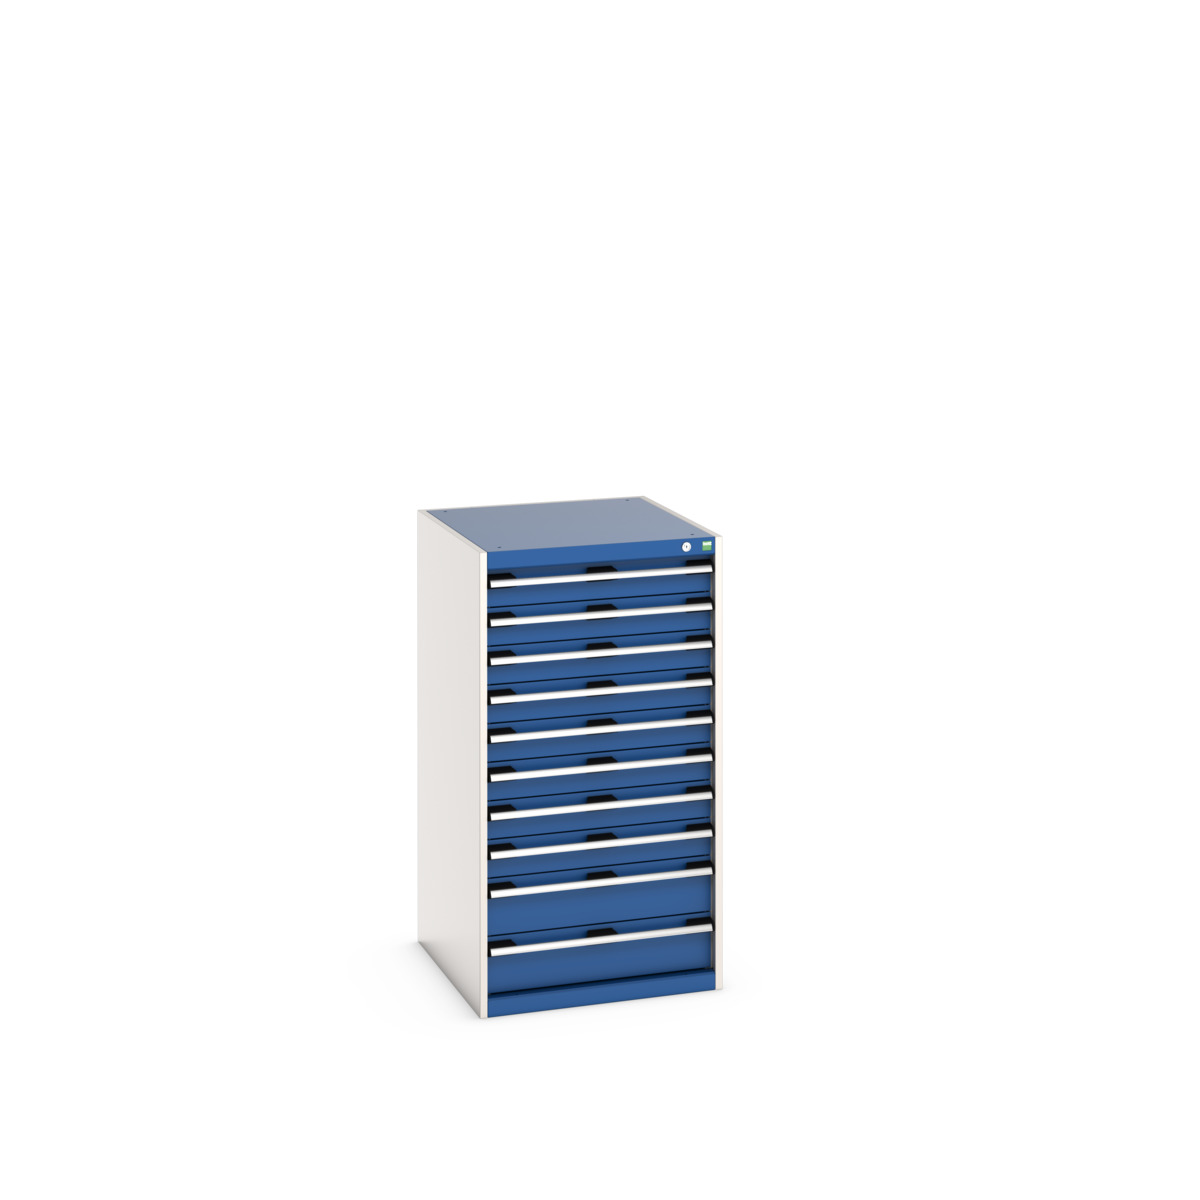 40027043.11V - cubio drawer cabinet